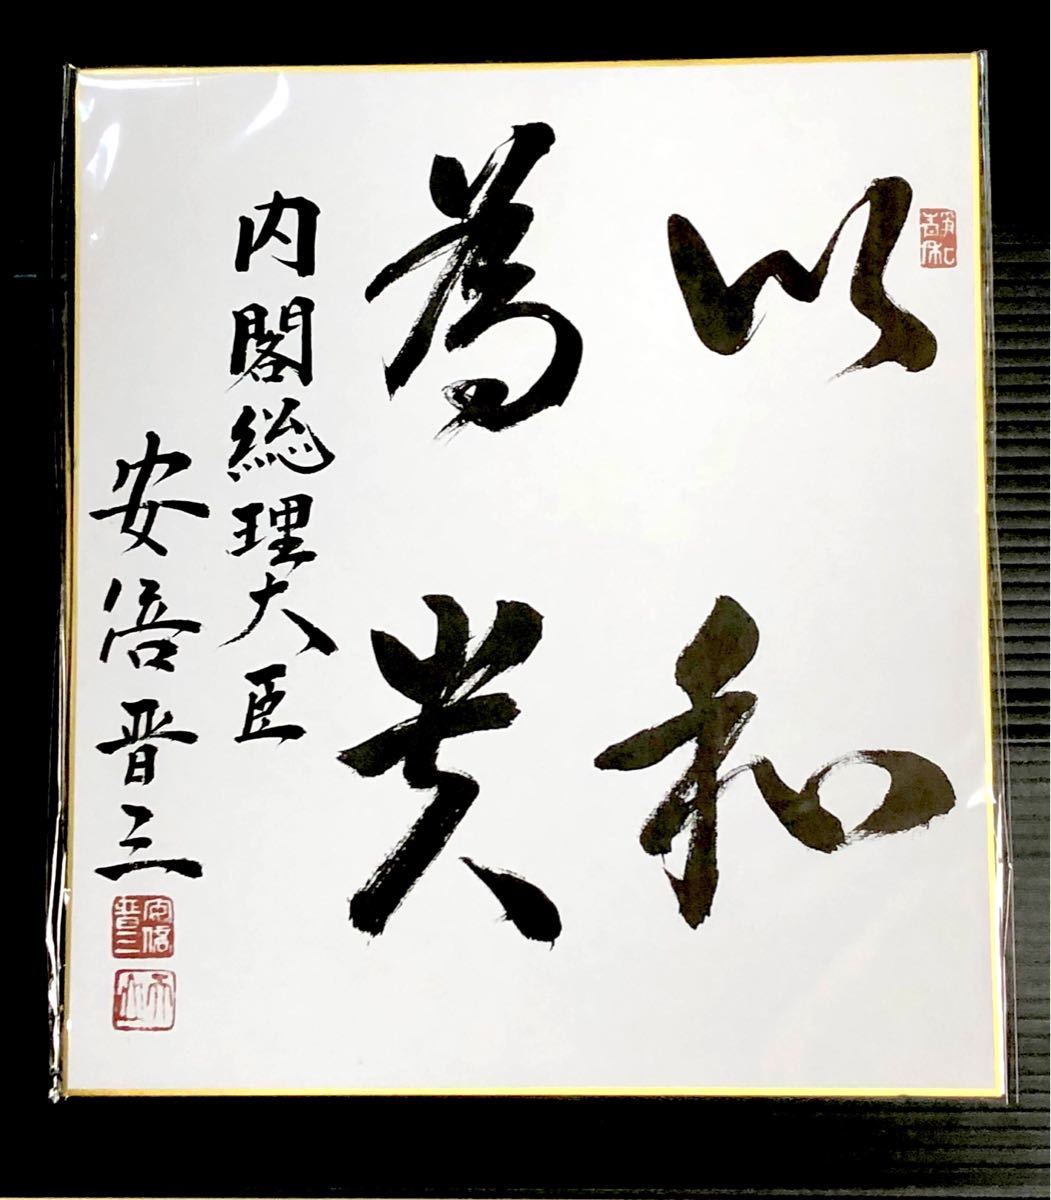 安倍晋三 内閣総理大臣 色紙 サイン色紙印刷【 以和為貴 】自由民主党